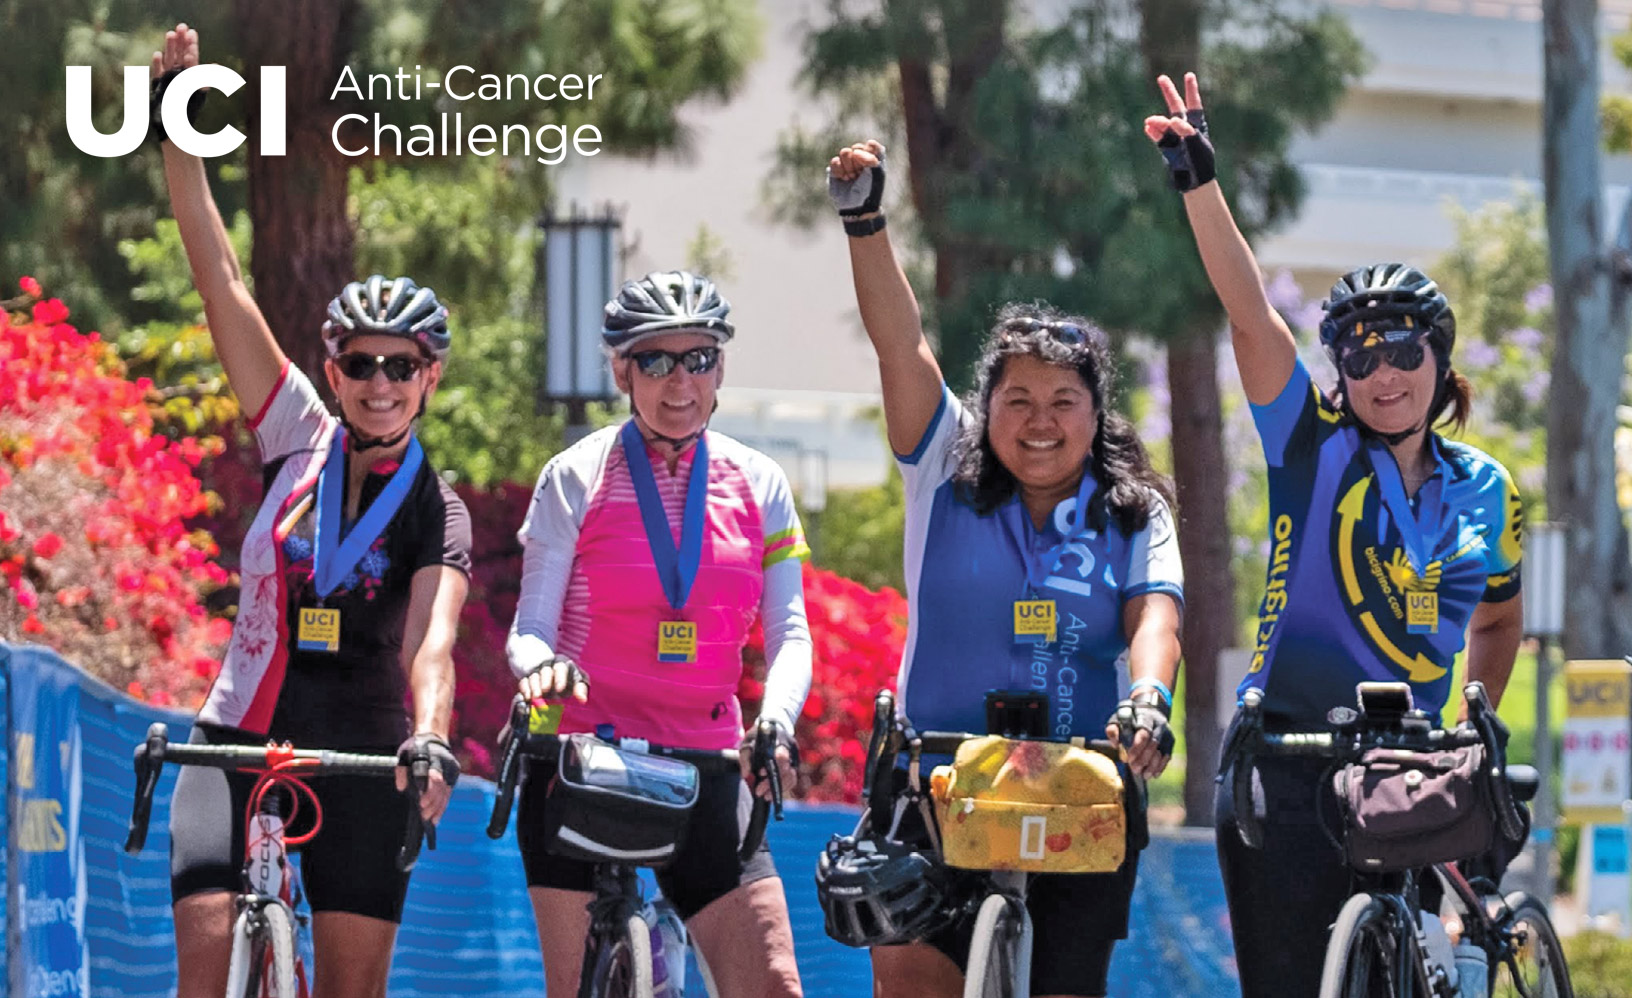 bikers participating in anticancer challenge